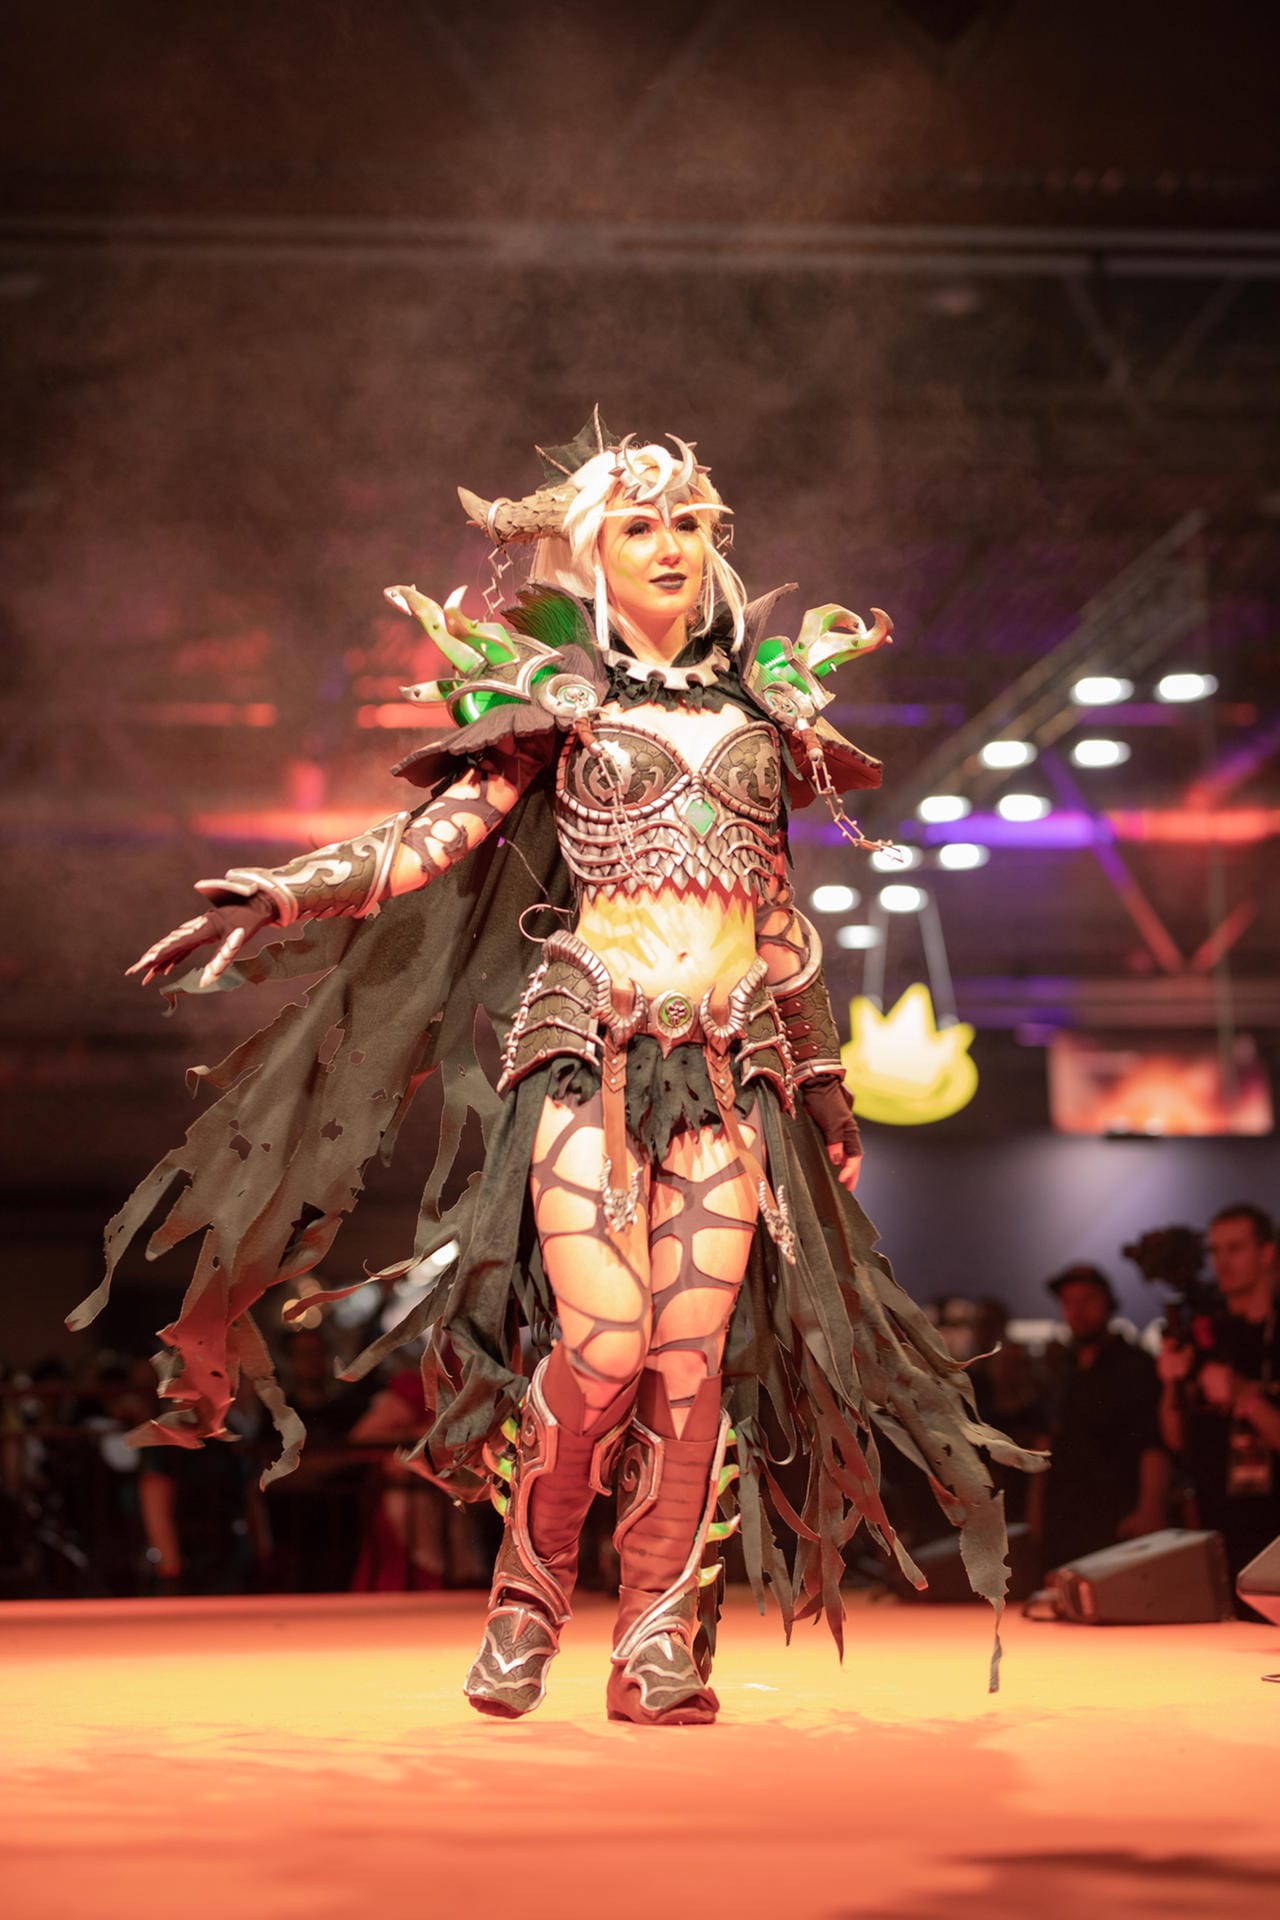 Silivren Cosplay verkörpert den Drachen Ysera aus "World of Warcraft". Zahlreiche LEDs bringen die Kristalle zum Leuchten.